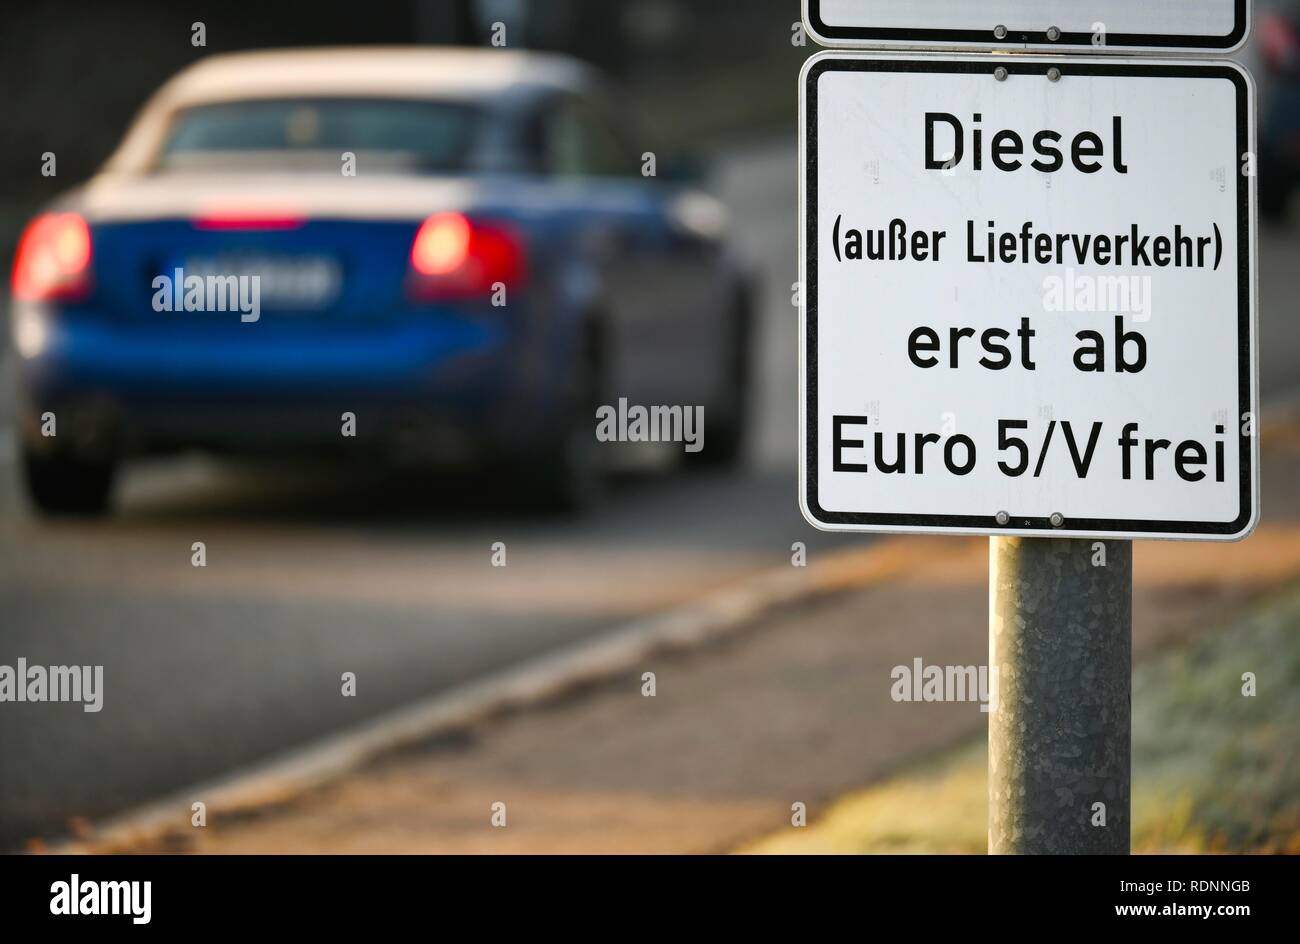 Verkehrsschild, erste große städtische diesel Verbot vom 01.01.2019, ab Euro 5/V frei, ausgenommen Lieferverkehr, low emission zone Stockfoto